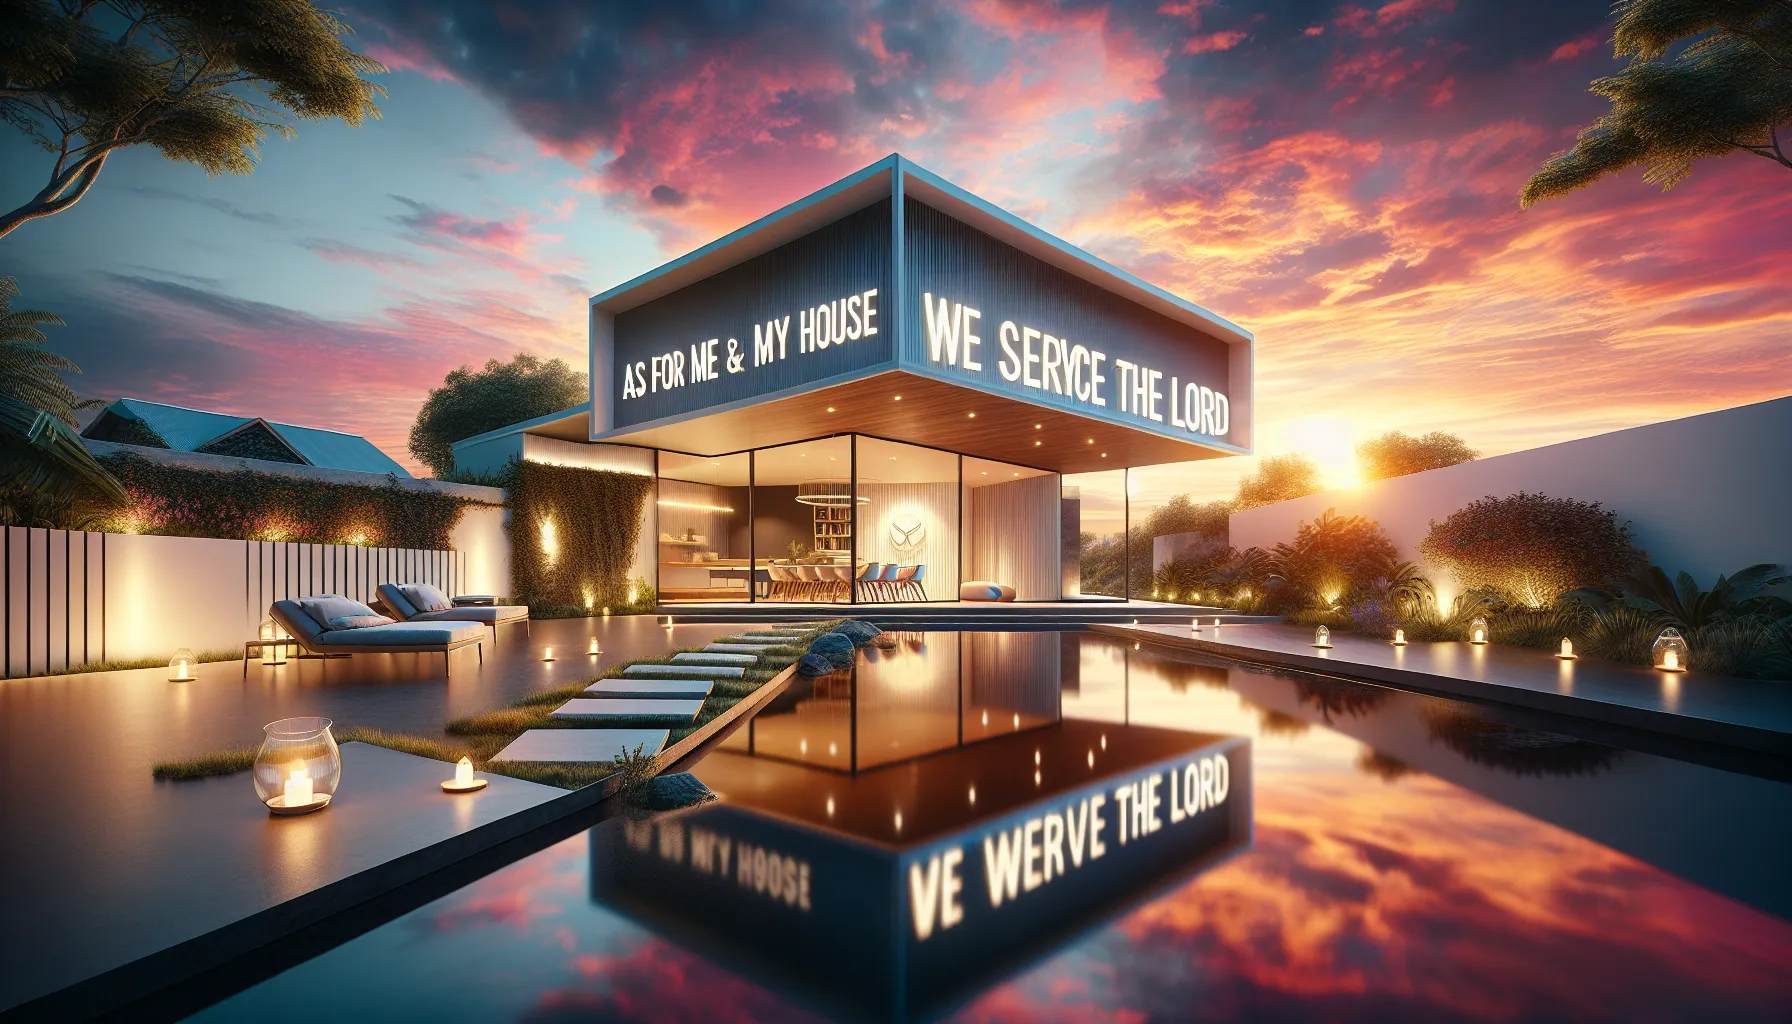 Fotografía inspiradora que representa el versículo bíblico 'Pero yo y mi casa serviremos al Señor' en un diseño moderno y elegante.